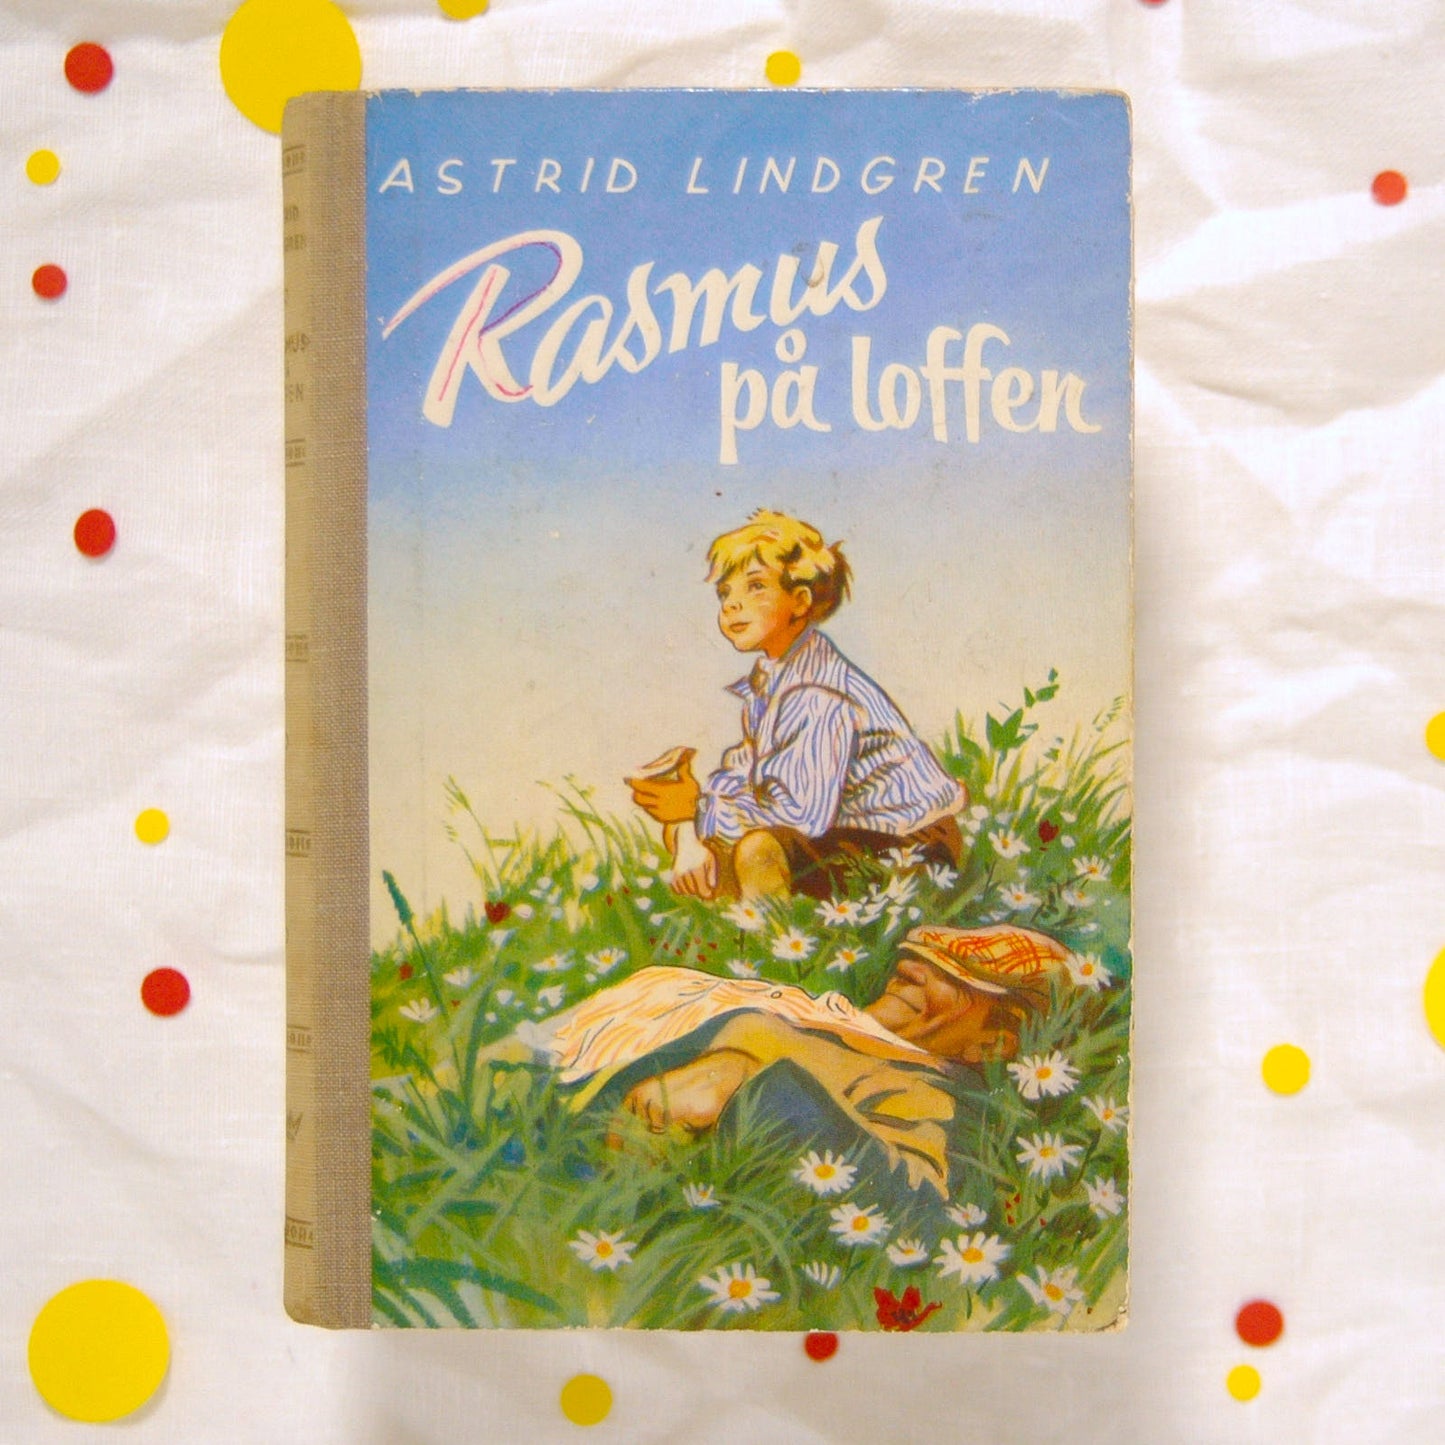 Rasmus på loffen av Astrid Lindgren